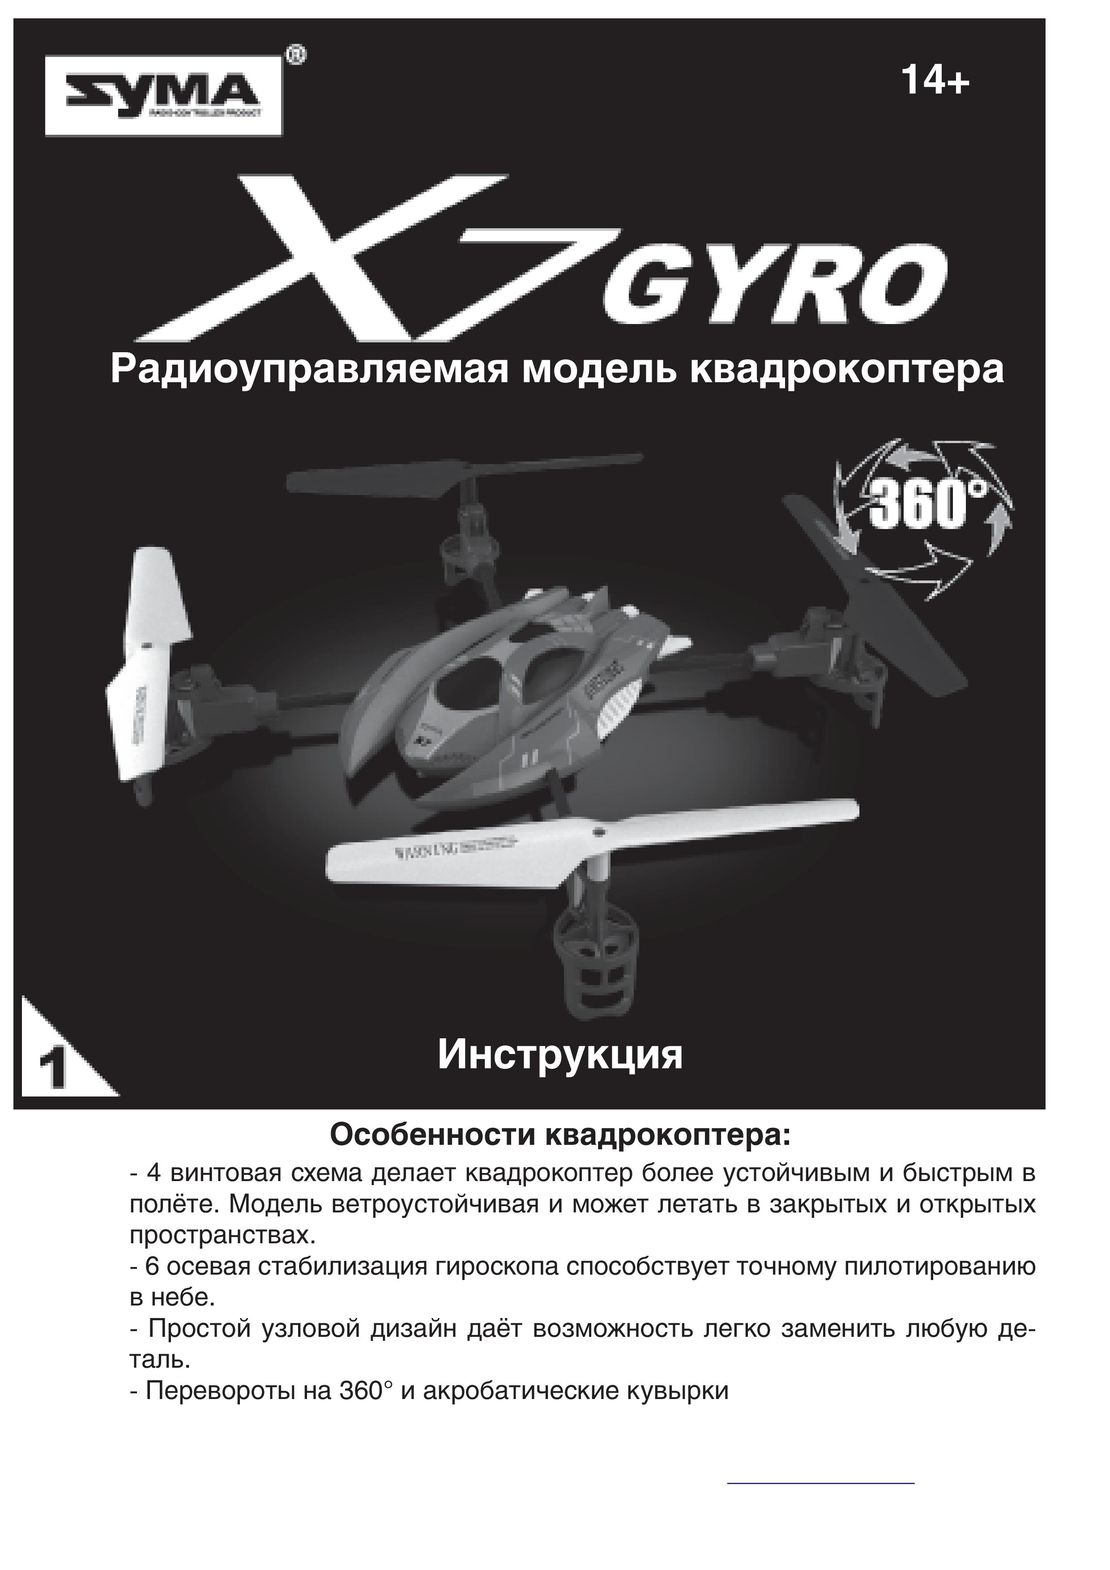 Syma X7 инструкция на русском